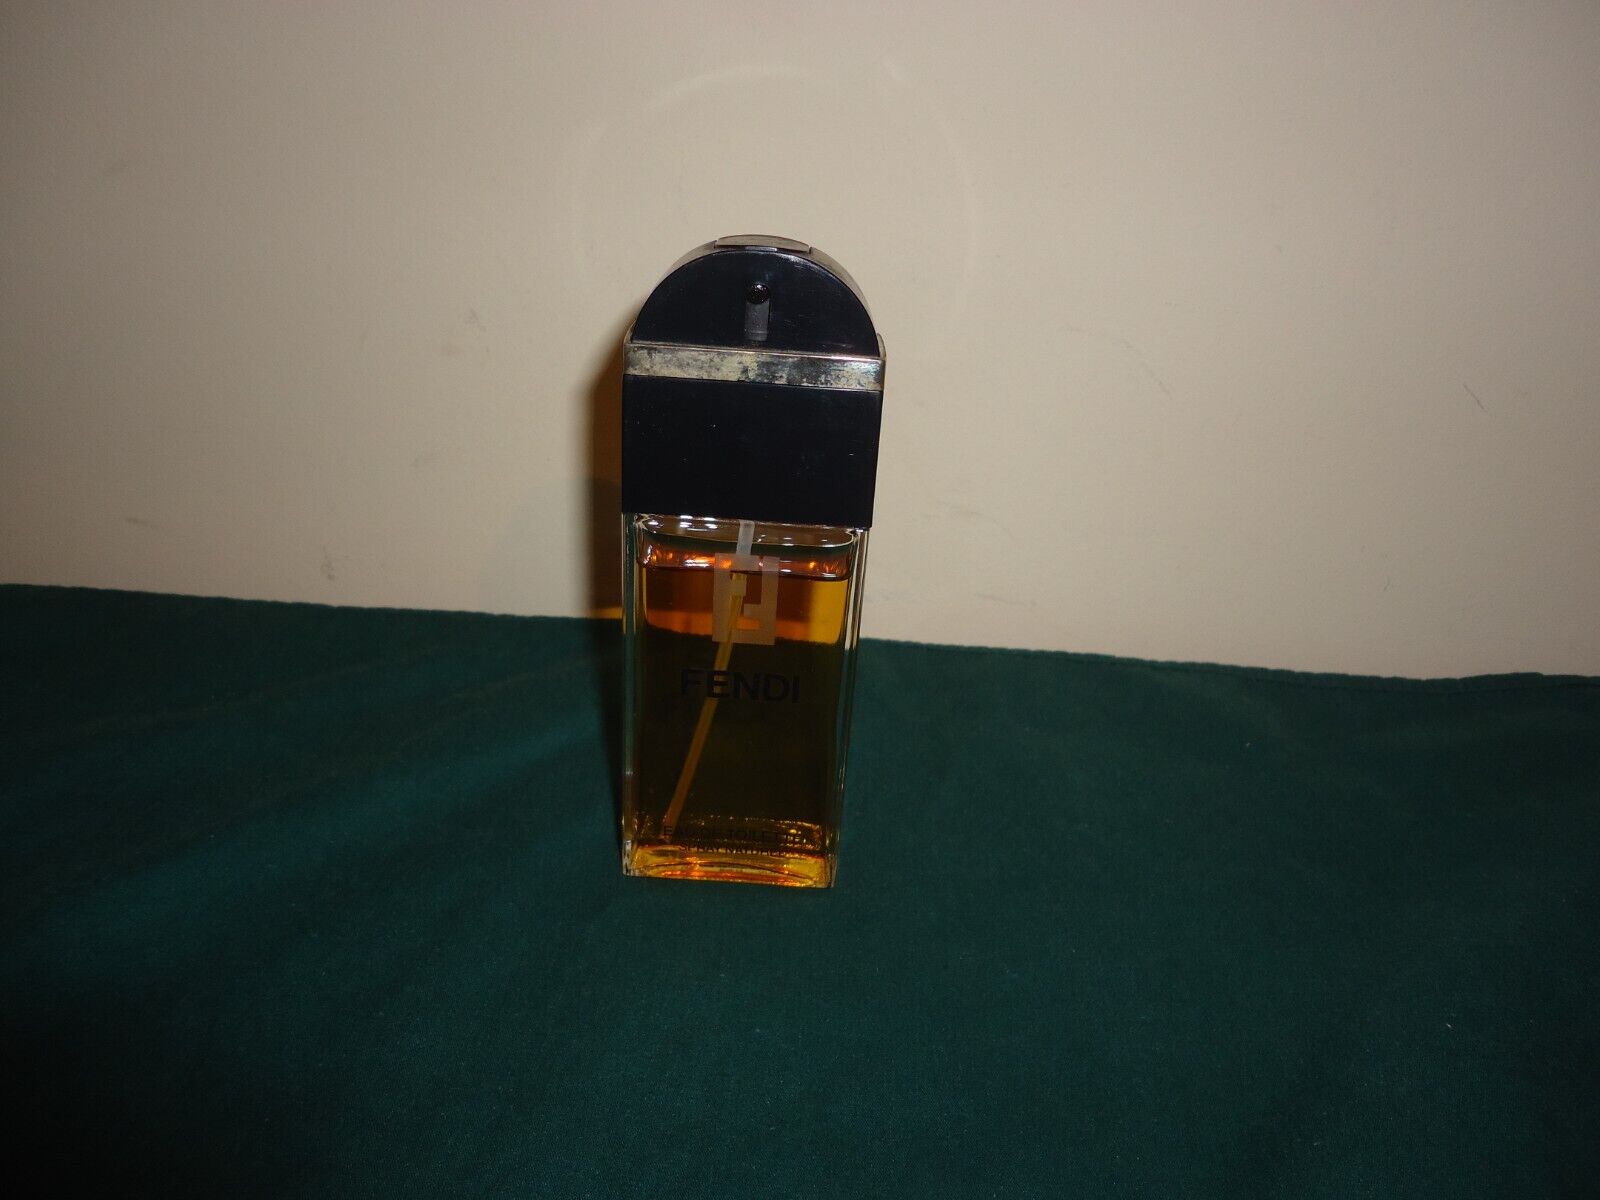 Vintage Fendi Eau De Toilette EDT Spray 1.7 fl oz 50mL Perfume 90% Full